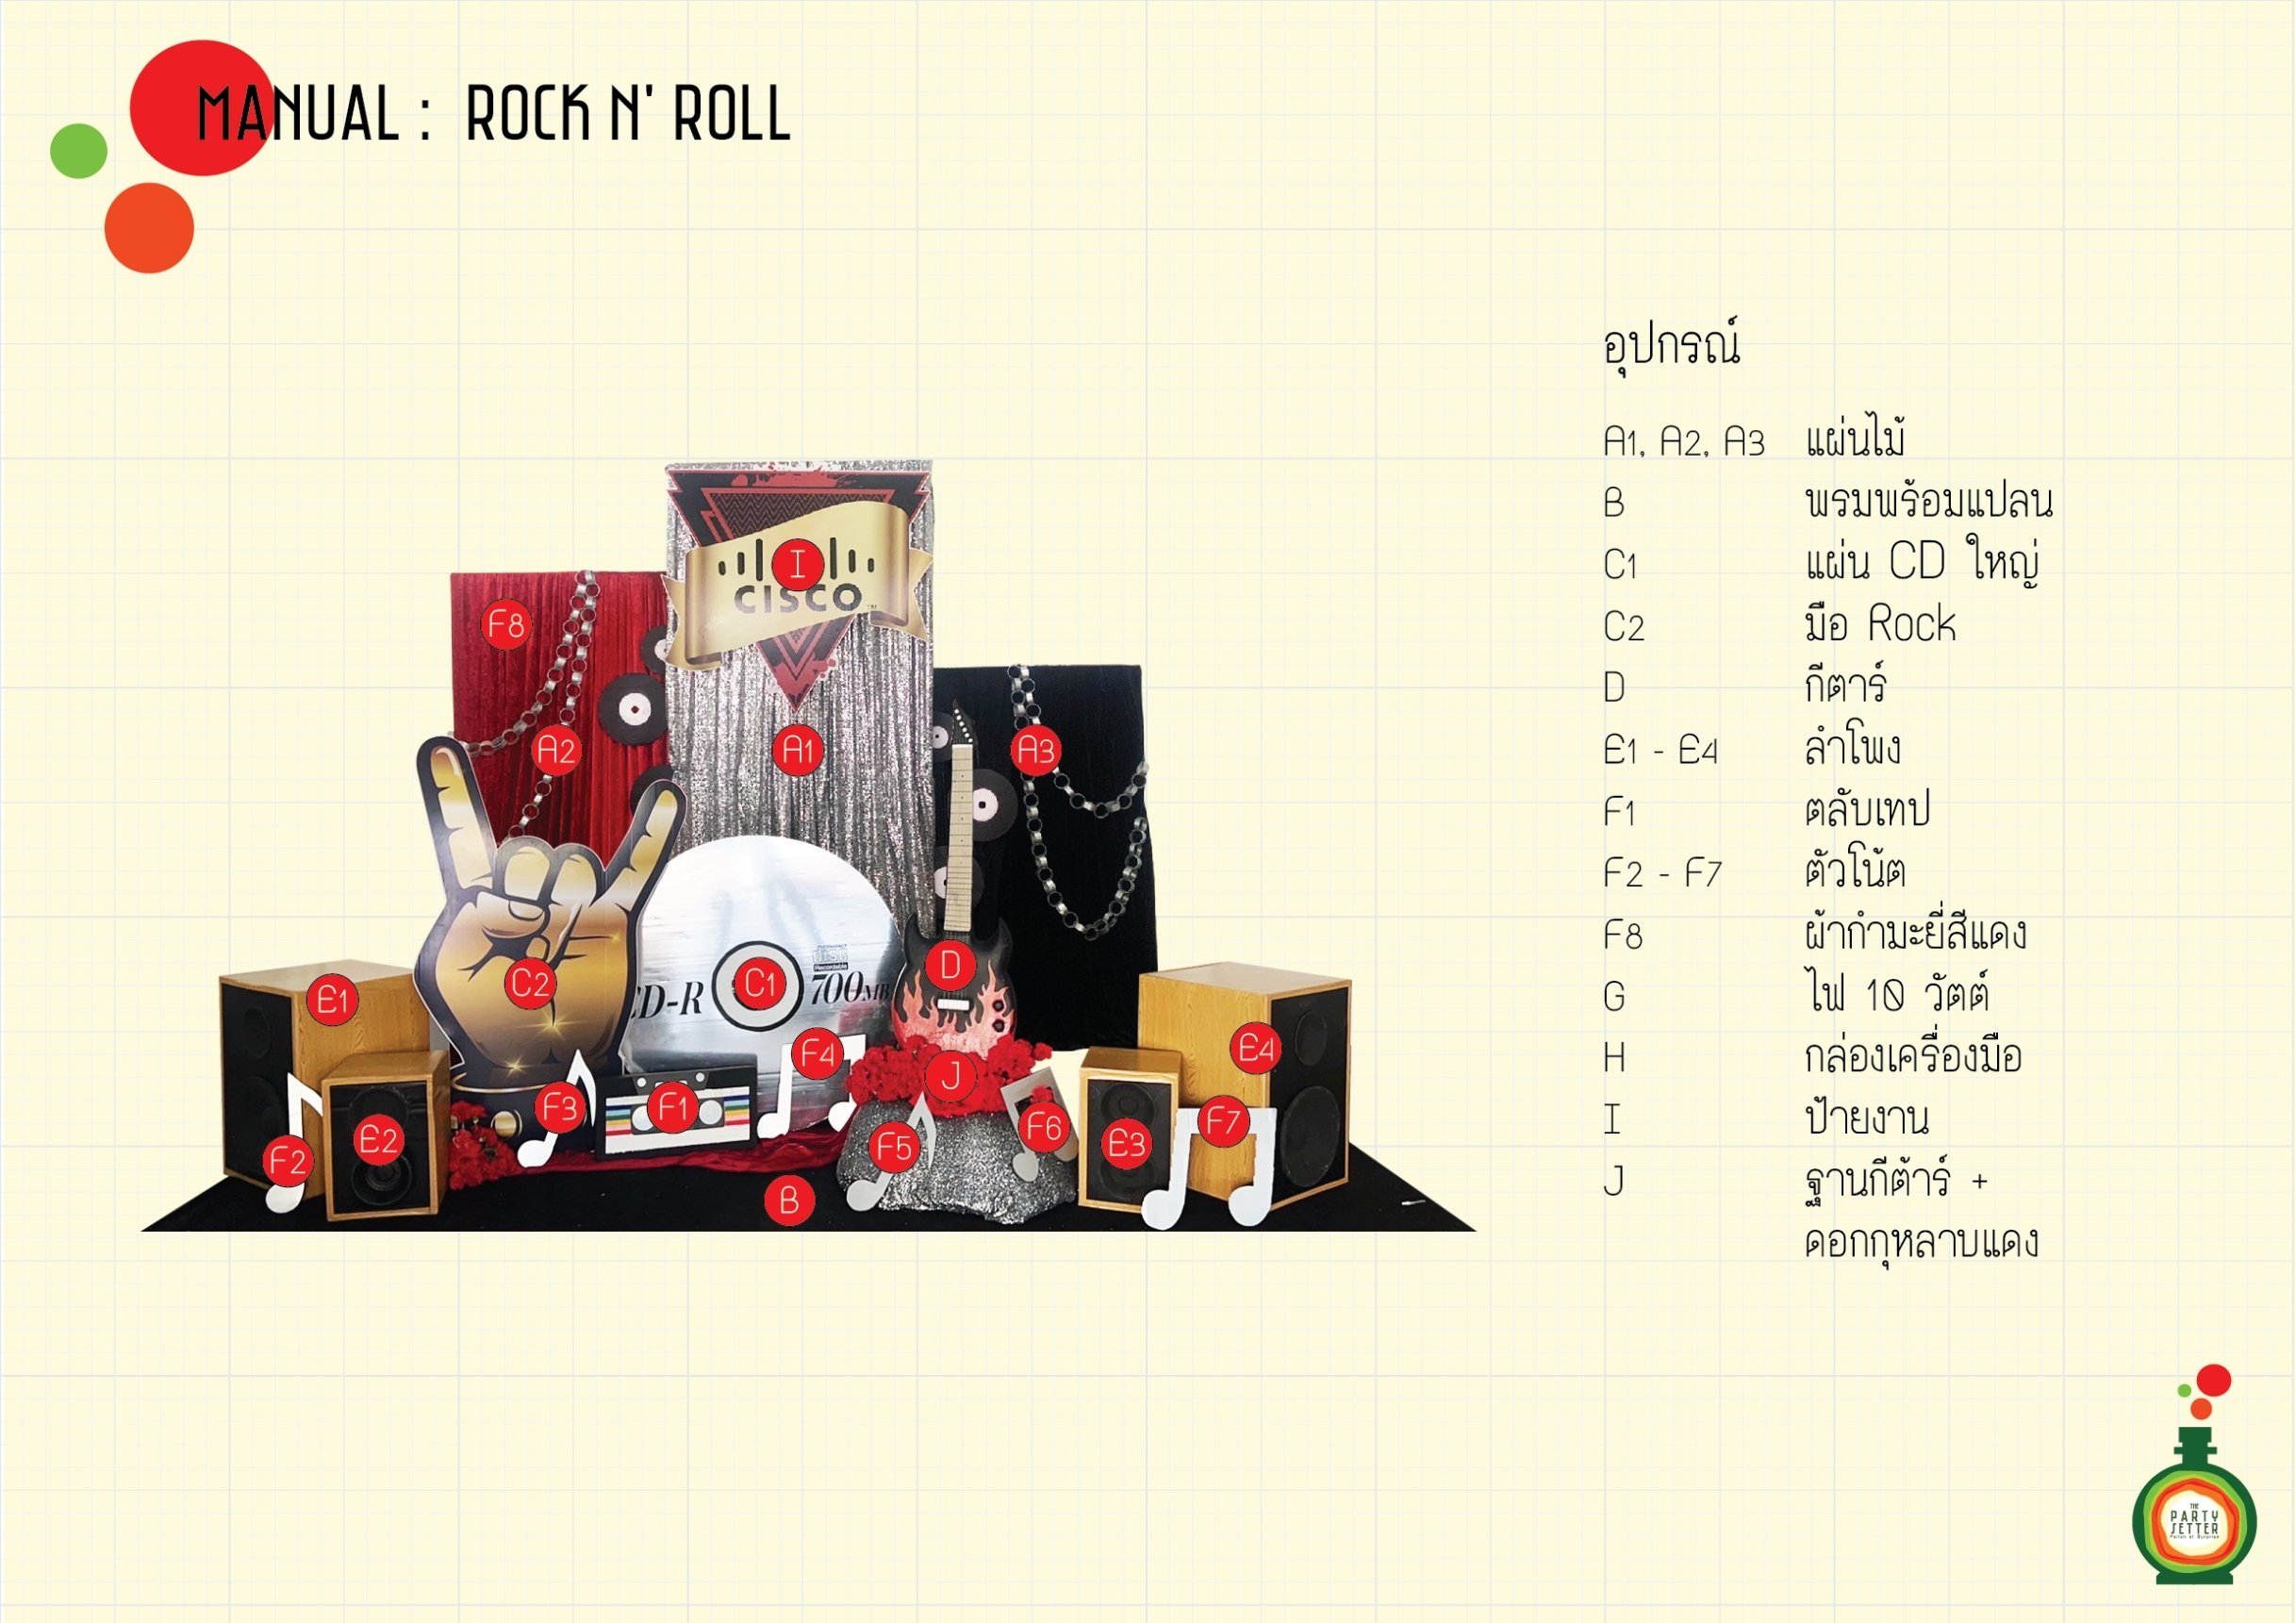 Manual_Rock n' Roll_00-01.jpg